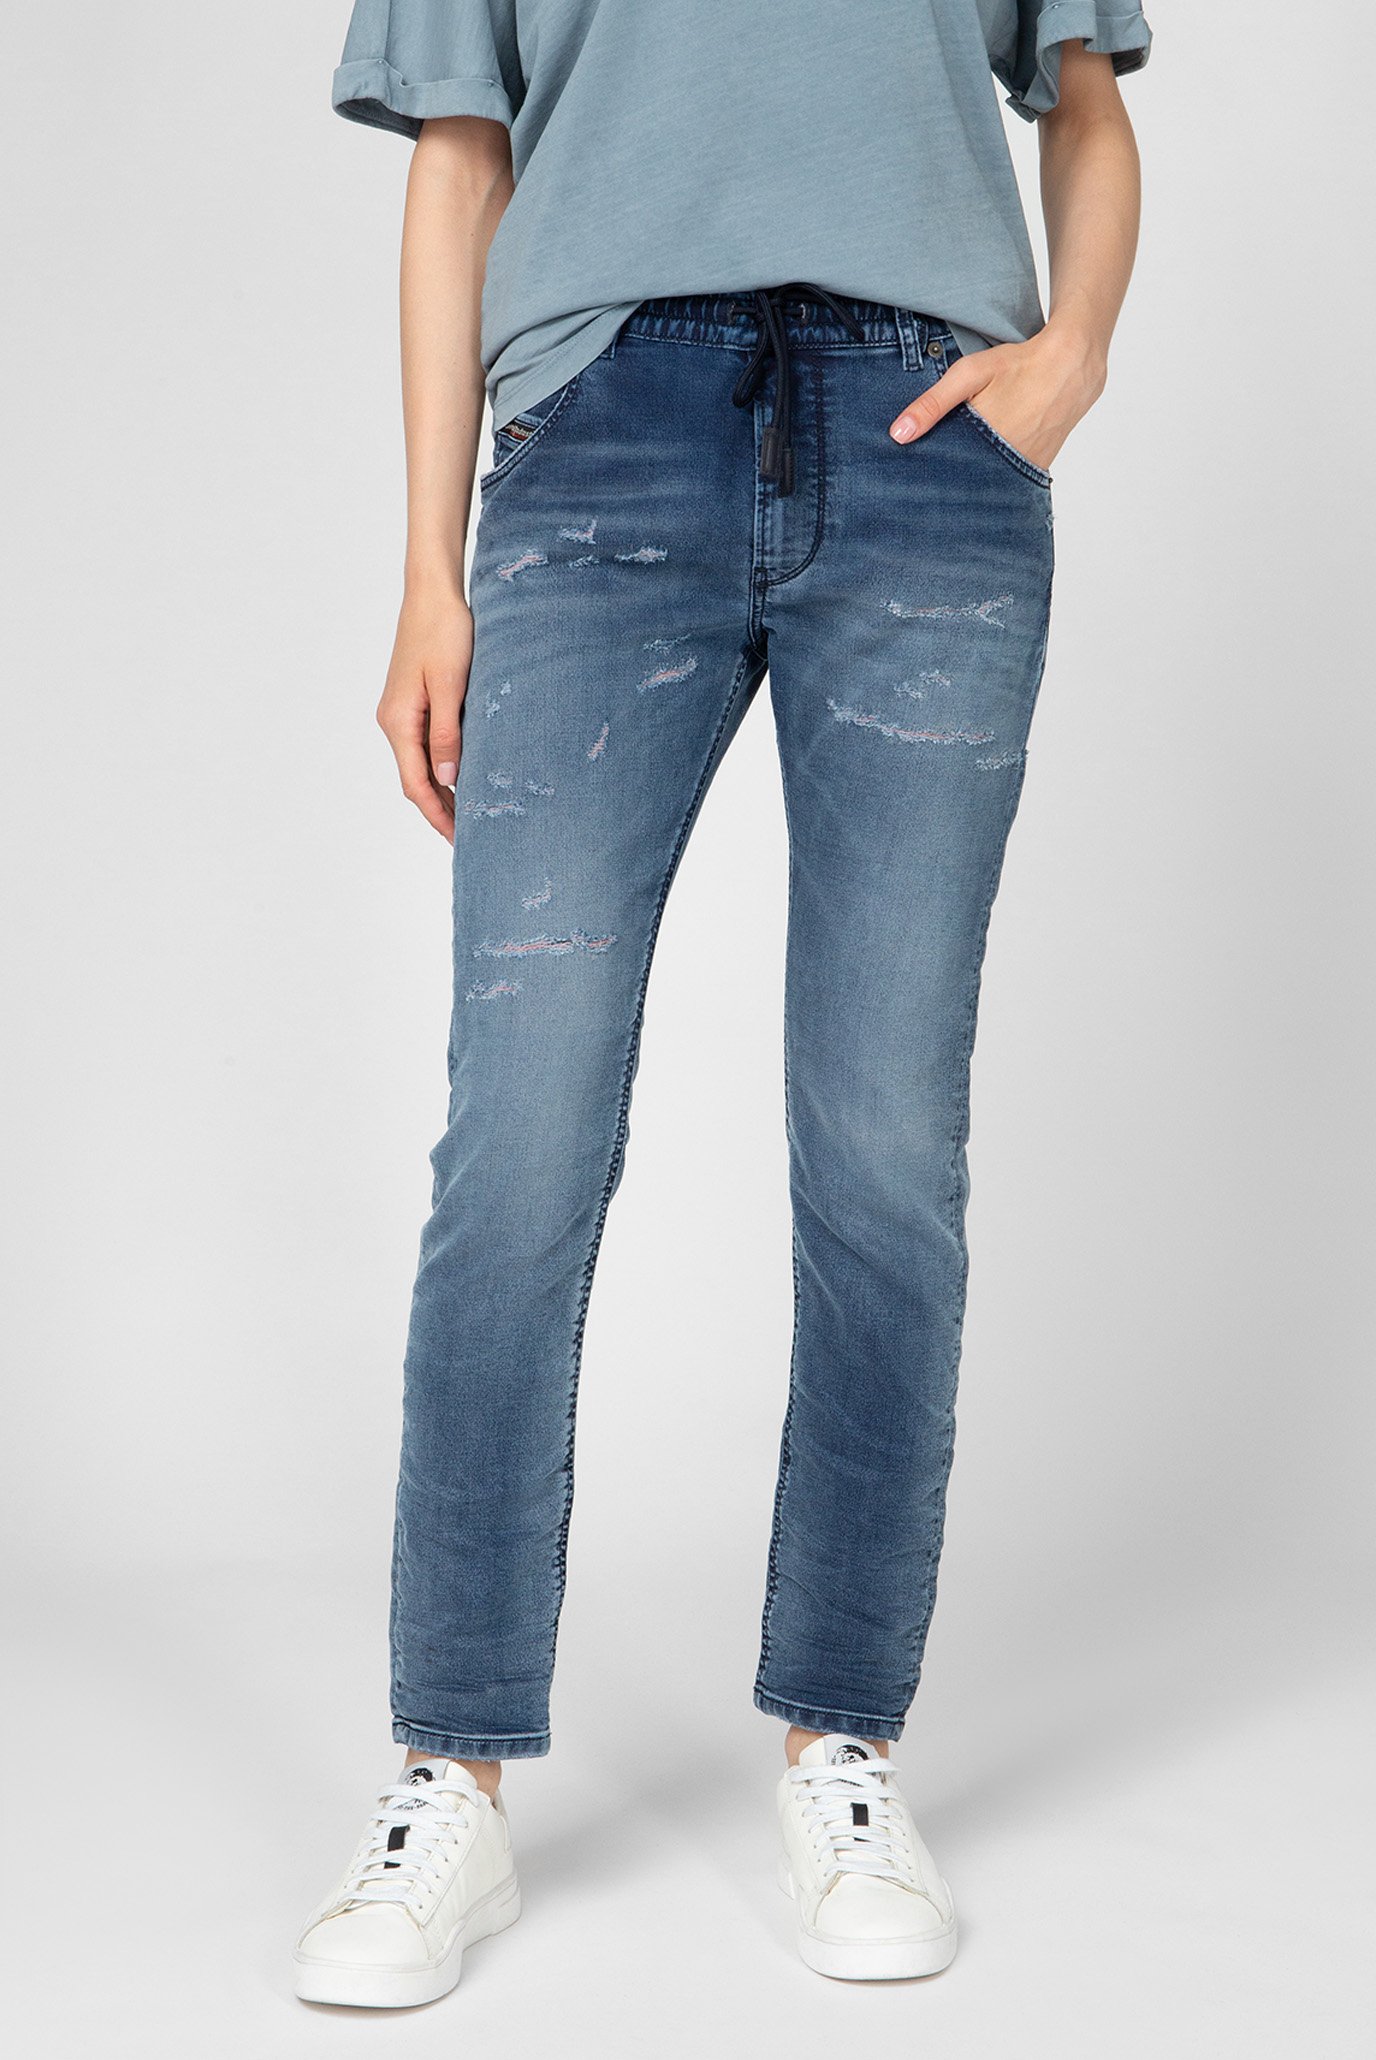 Жіночі сині джинси KRAILEY R-NE Sweat 1